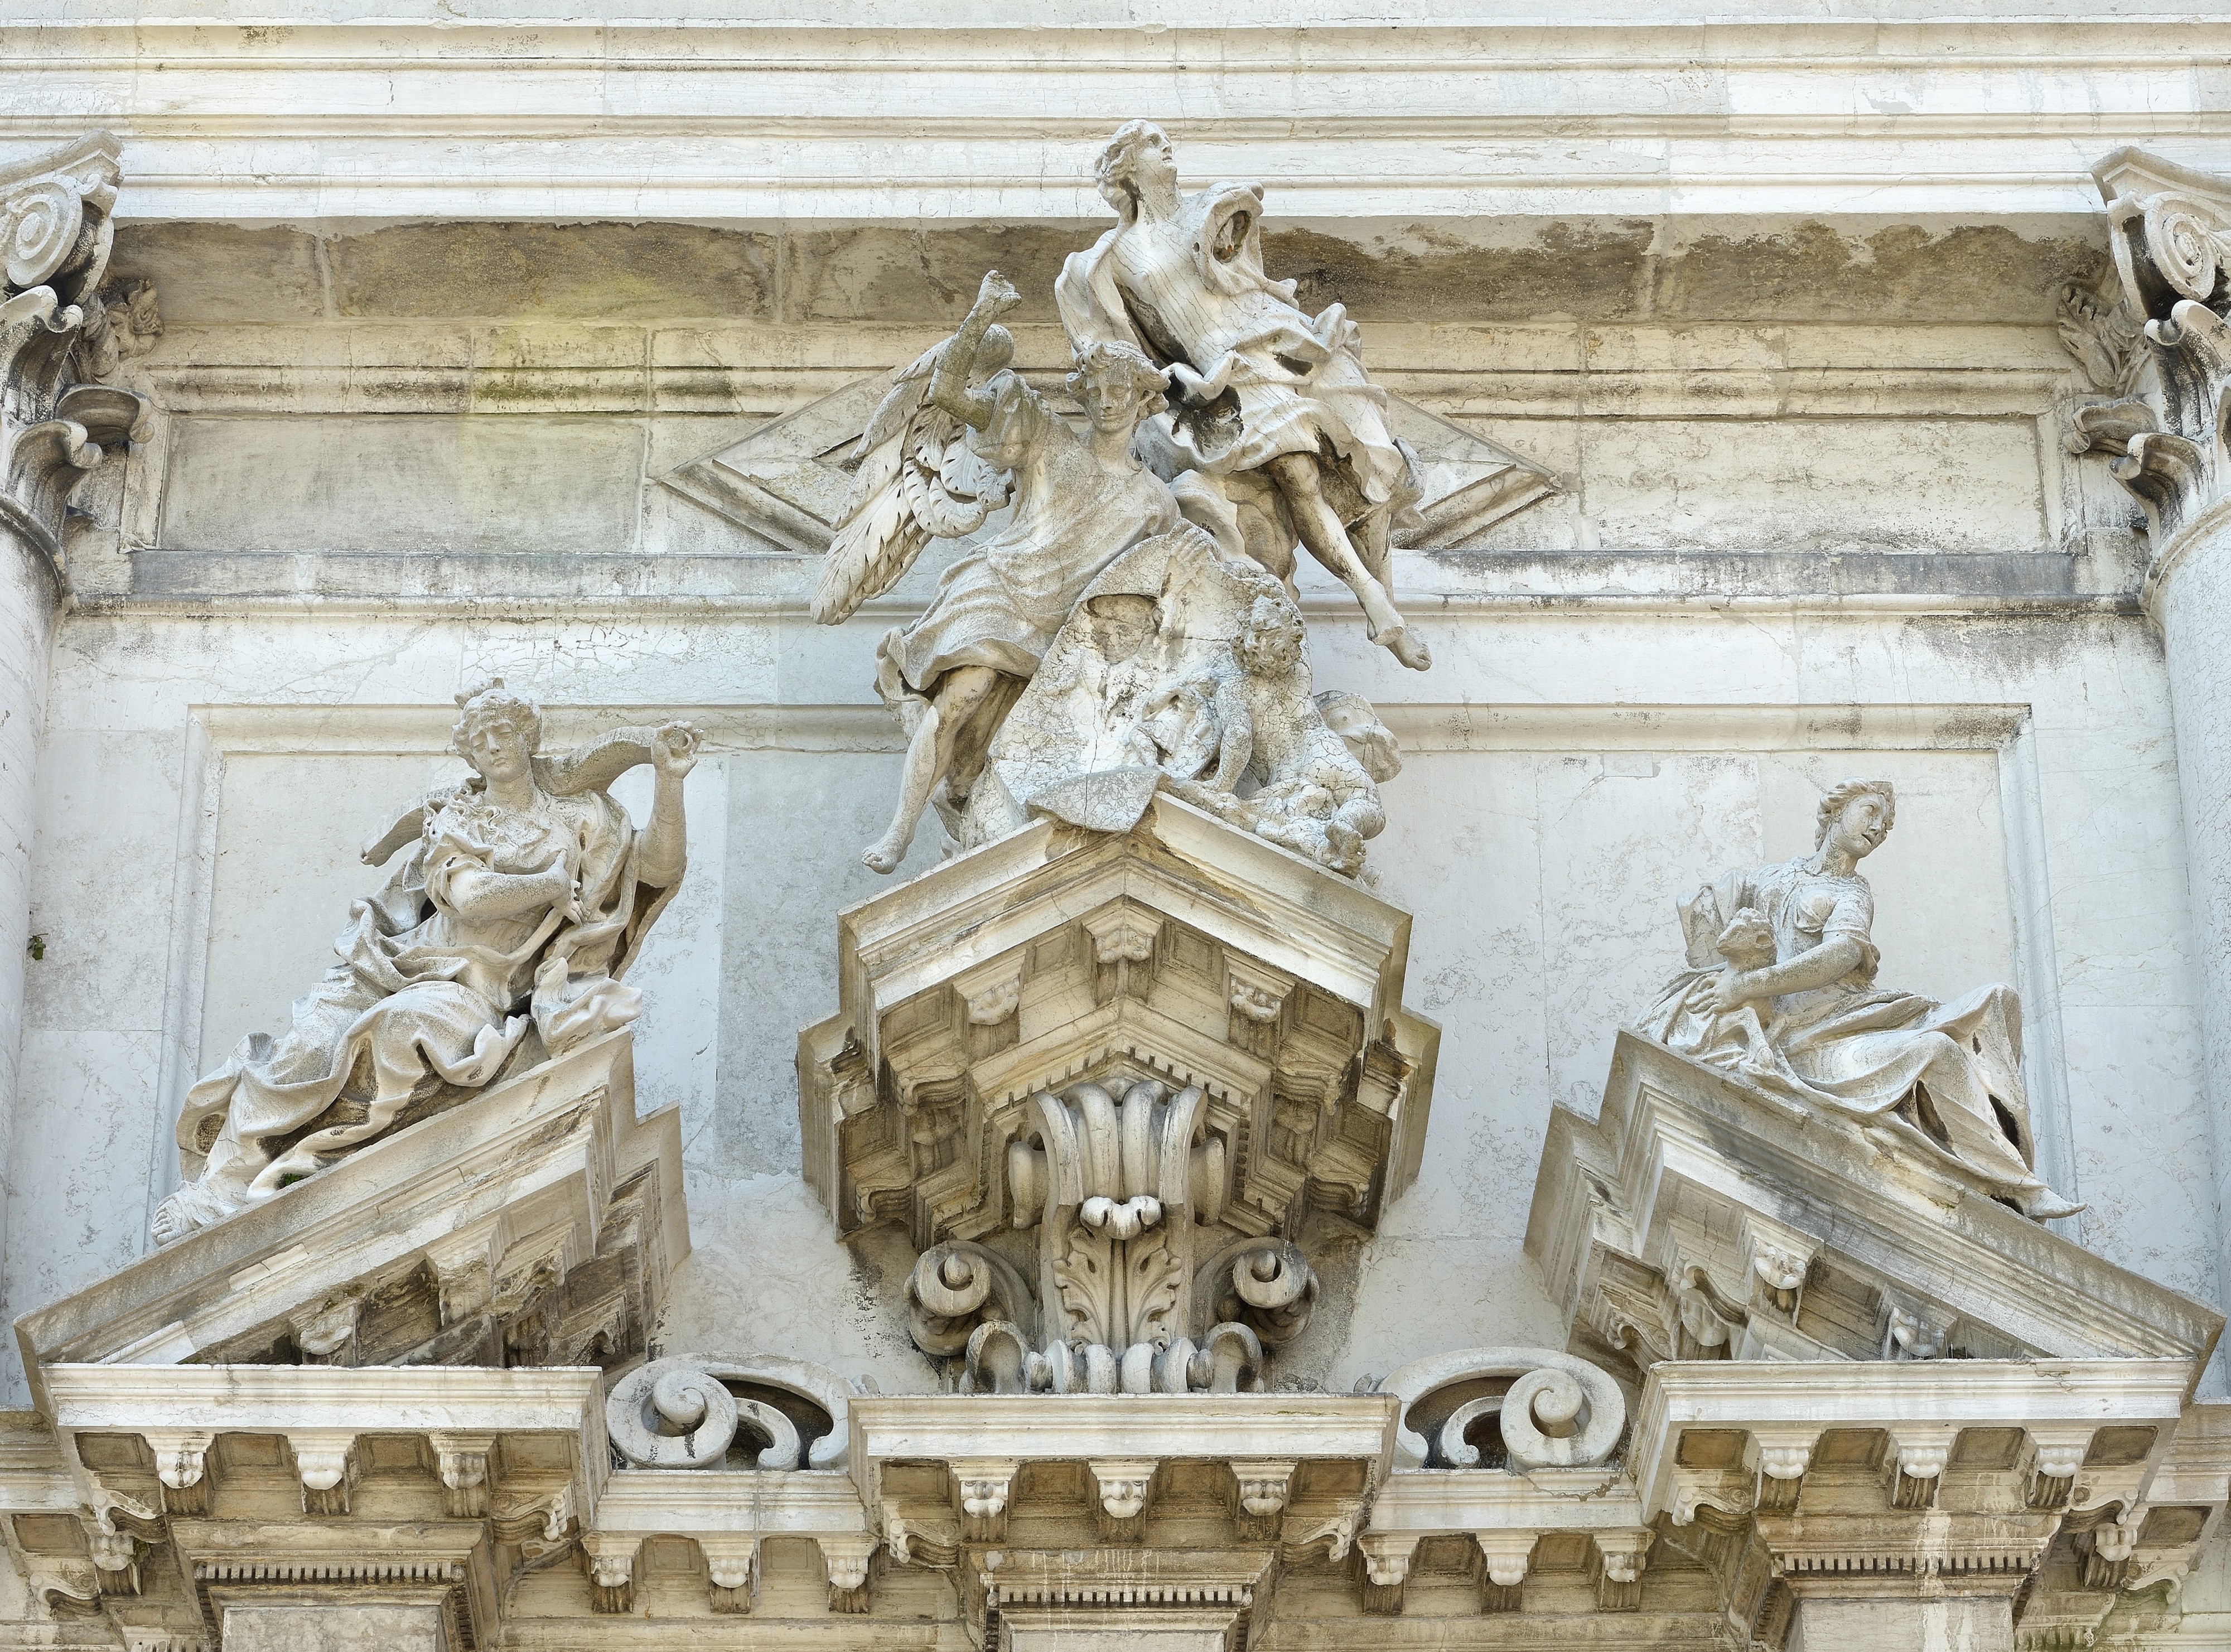 Sculptoreal group facade San Stae Venice